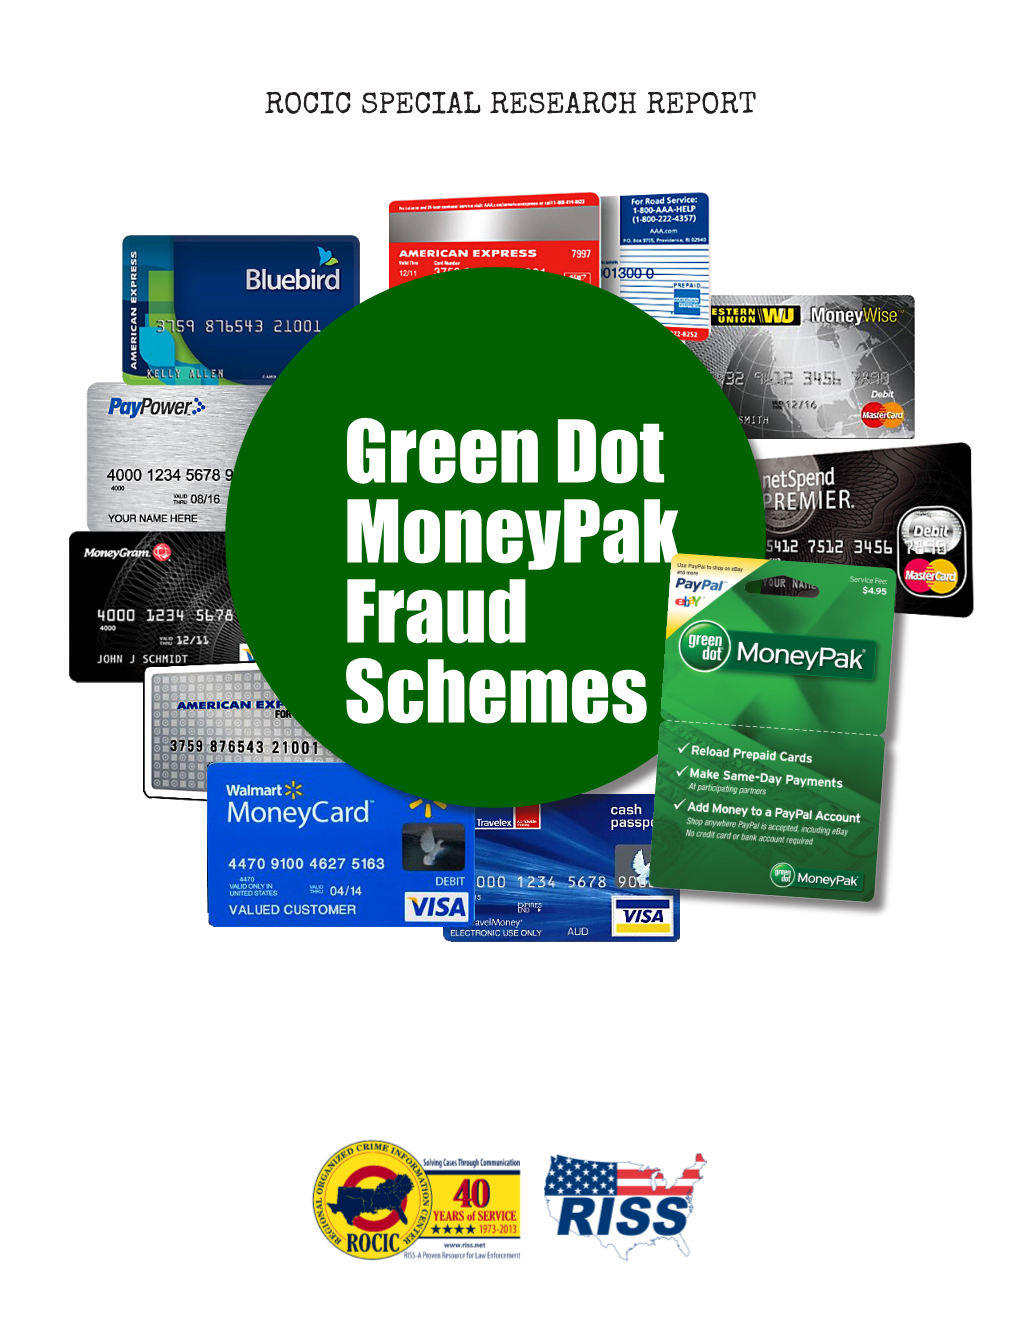 Green Dot Moneypak Fraud Schemes